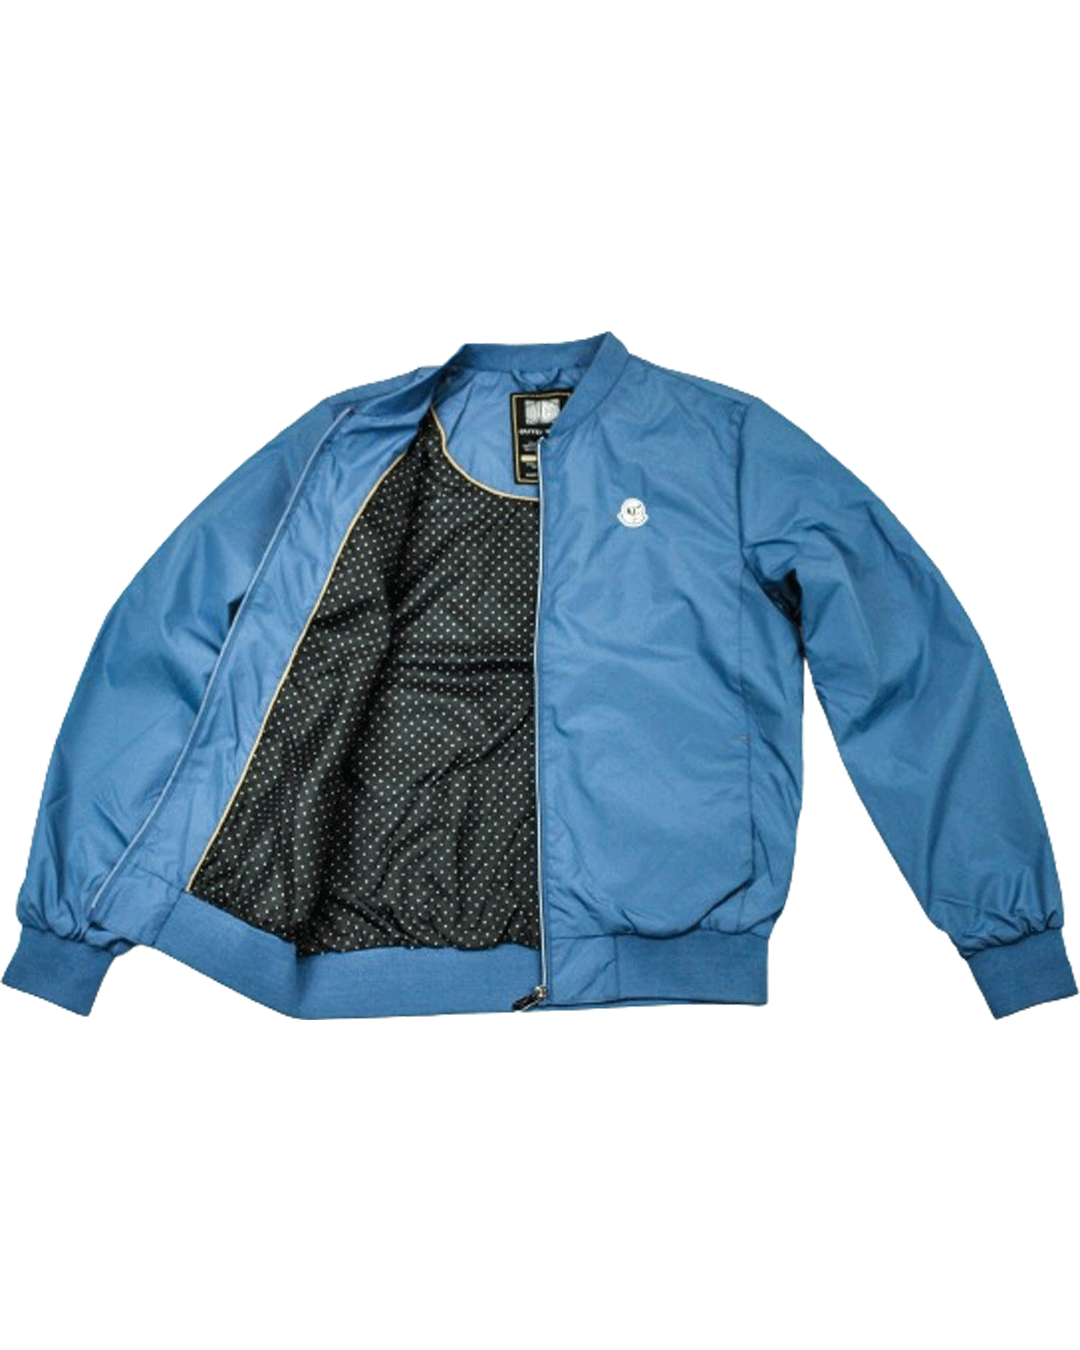 KG Blue Nylon Jacket